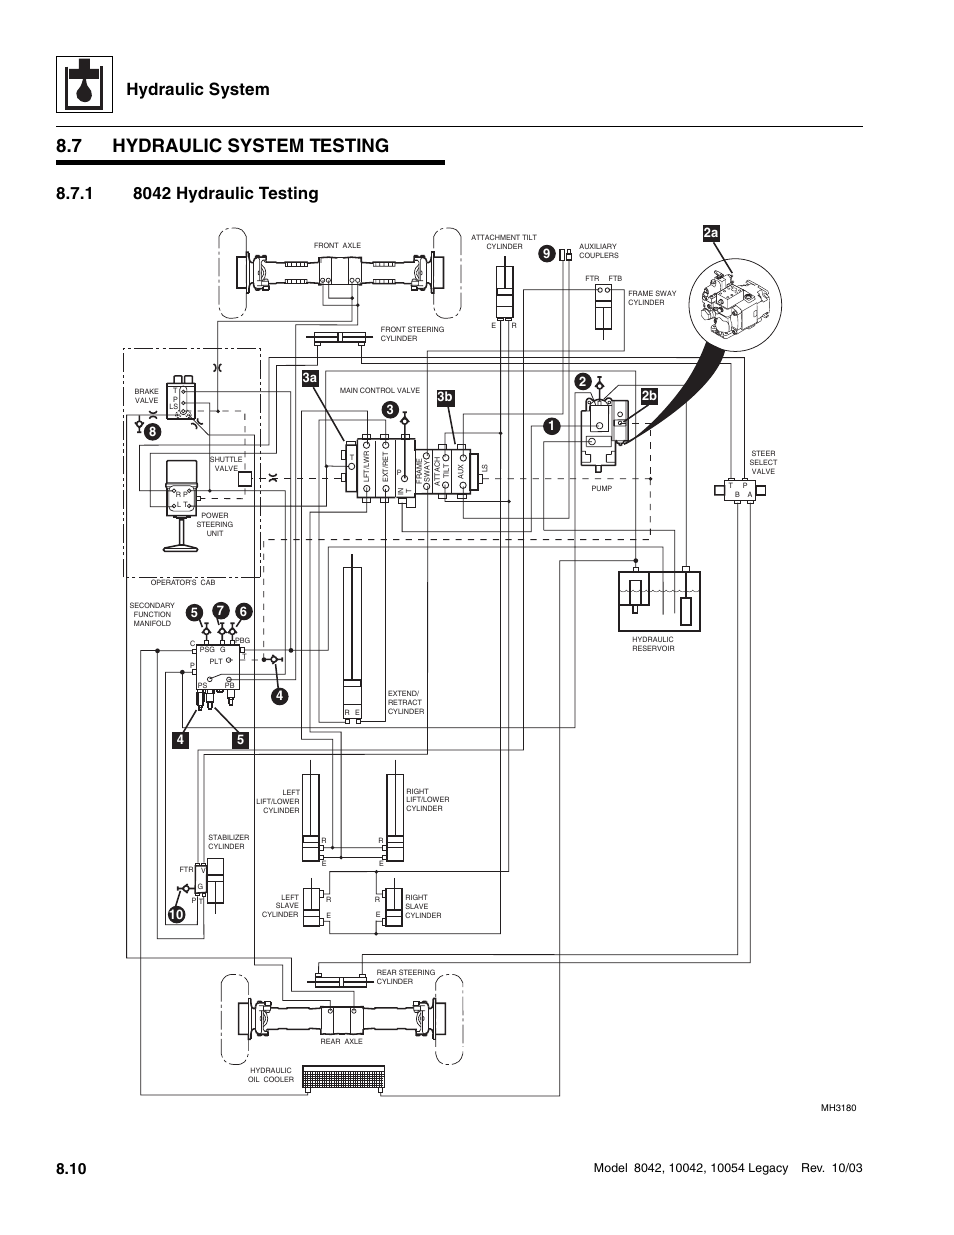 7 hydraulic system testing, 1 8042 hydraulic testing, Hydraulic system